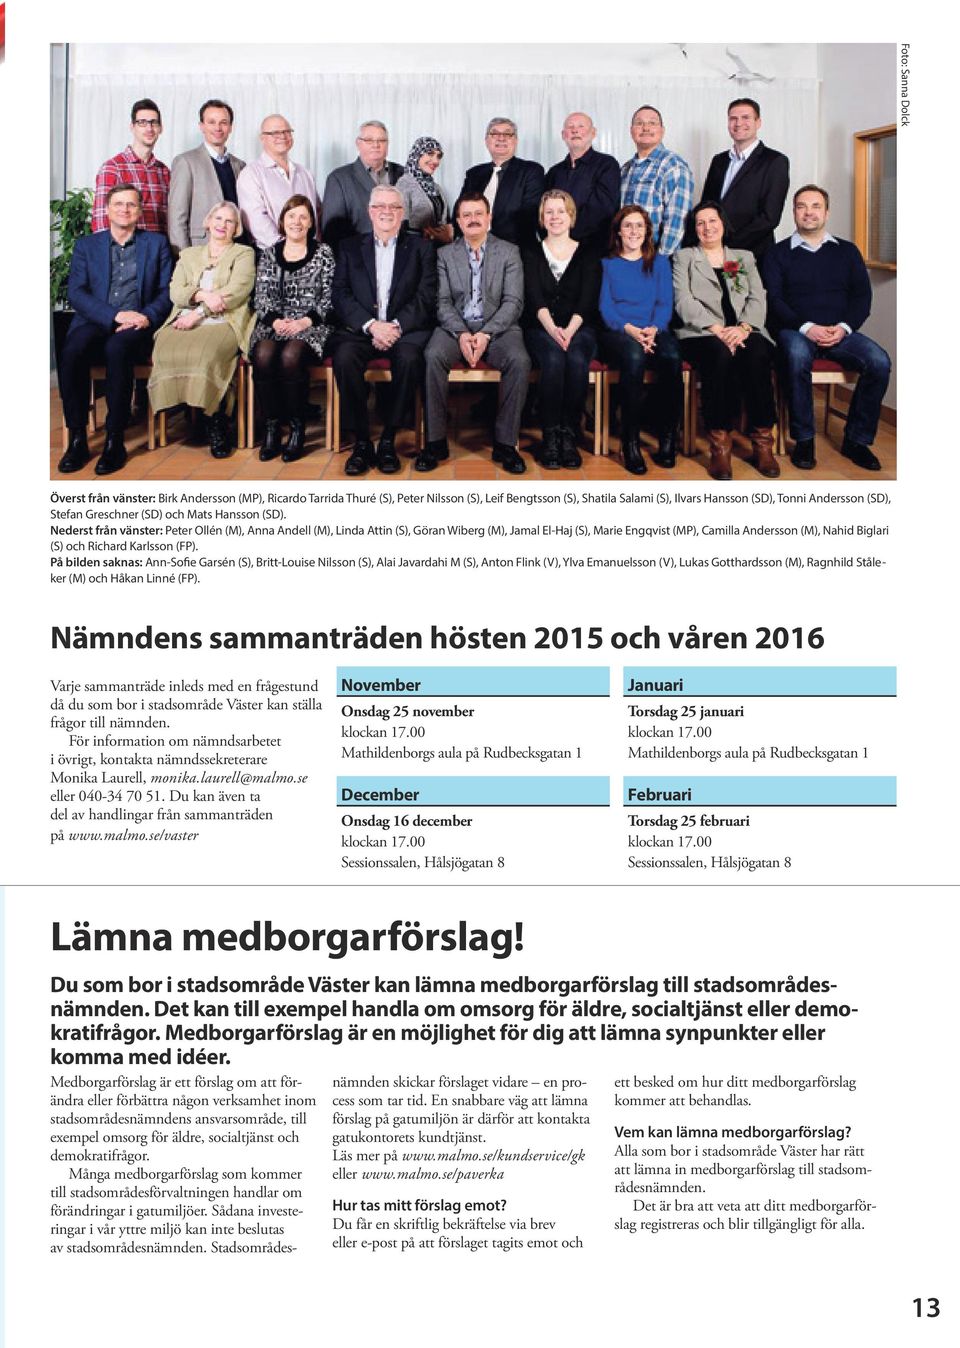 Nederst från vänster: Peter Ollén (M), Anna Andell (M), Linda Attin (S), Göran Wiberg (M), Jamal El-Haj (S), Marie Engqvist (MP), Camilla Andersson (M), Nahid Biglari (S) och Richard Karlsson (FP).